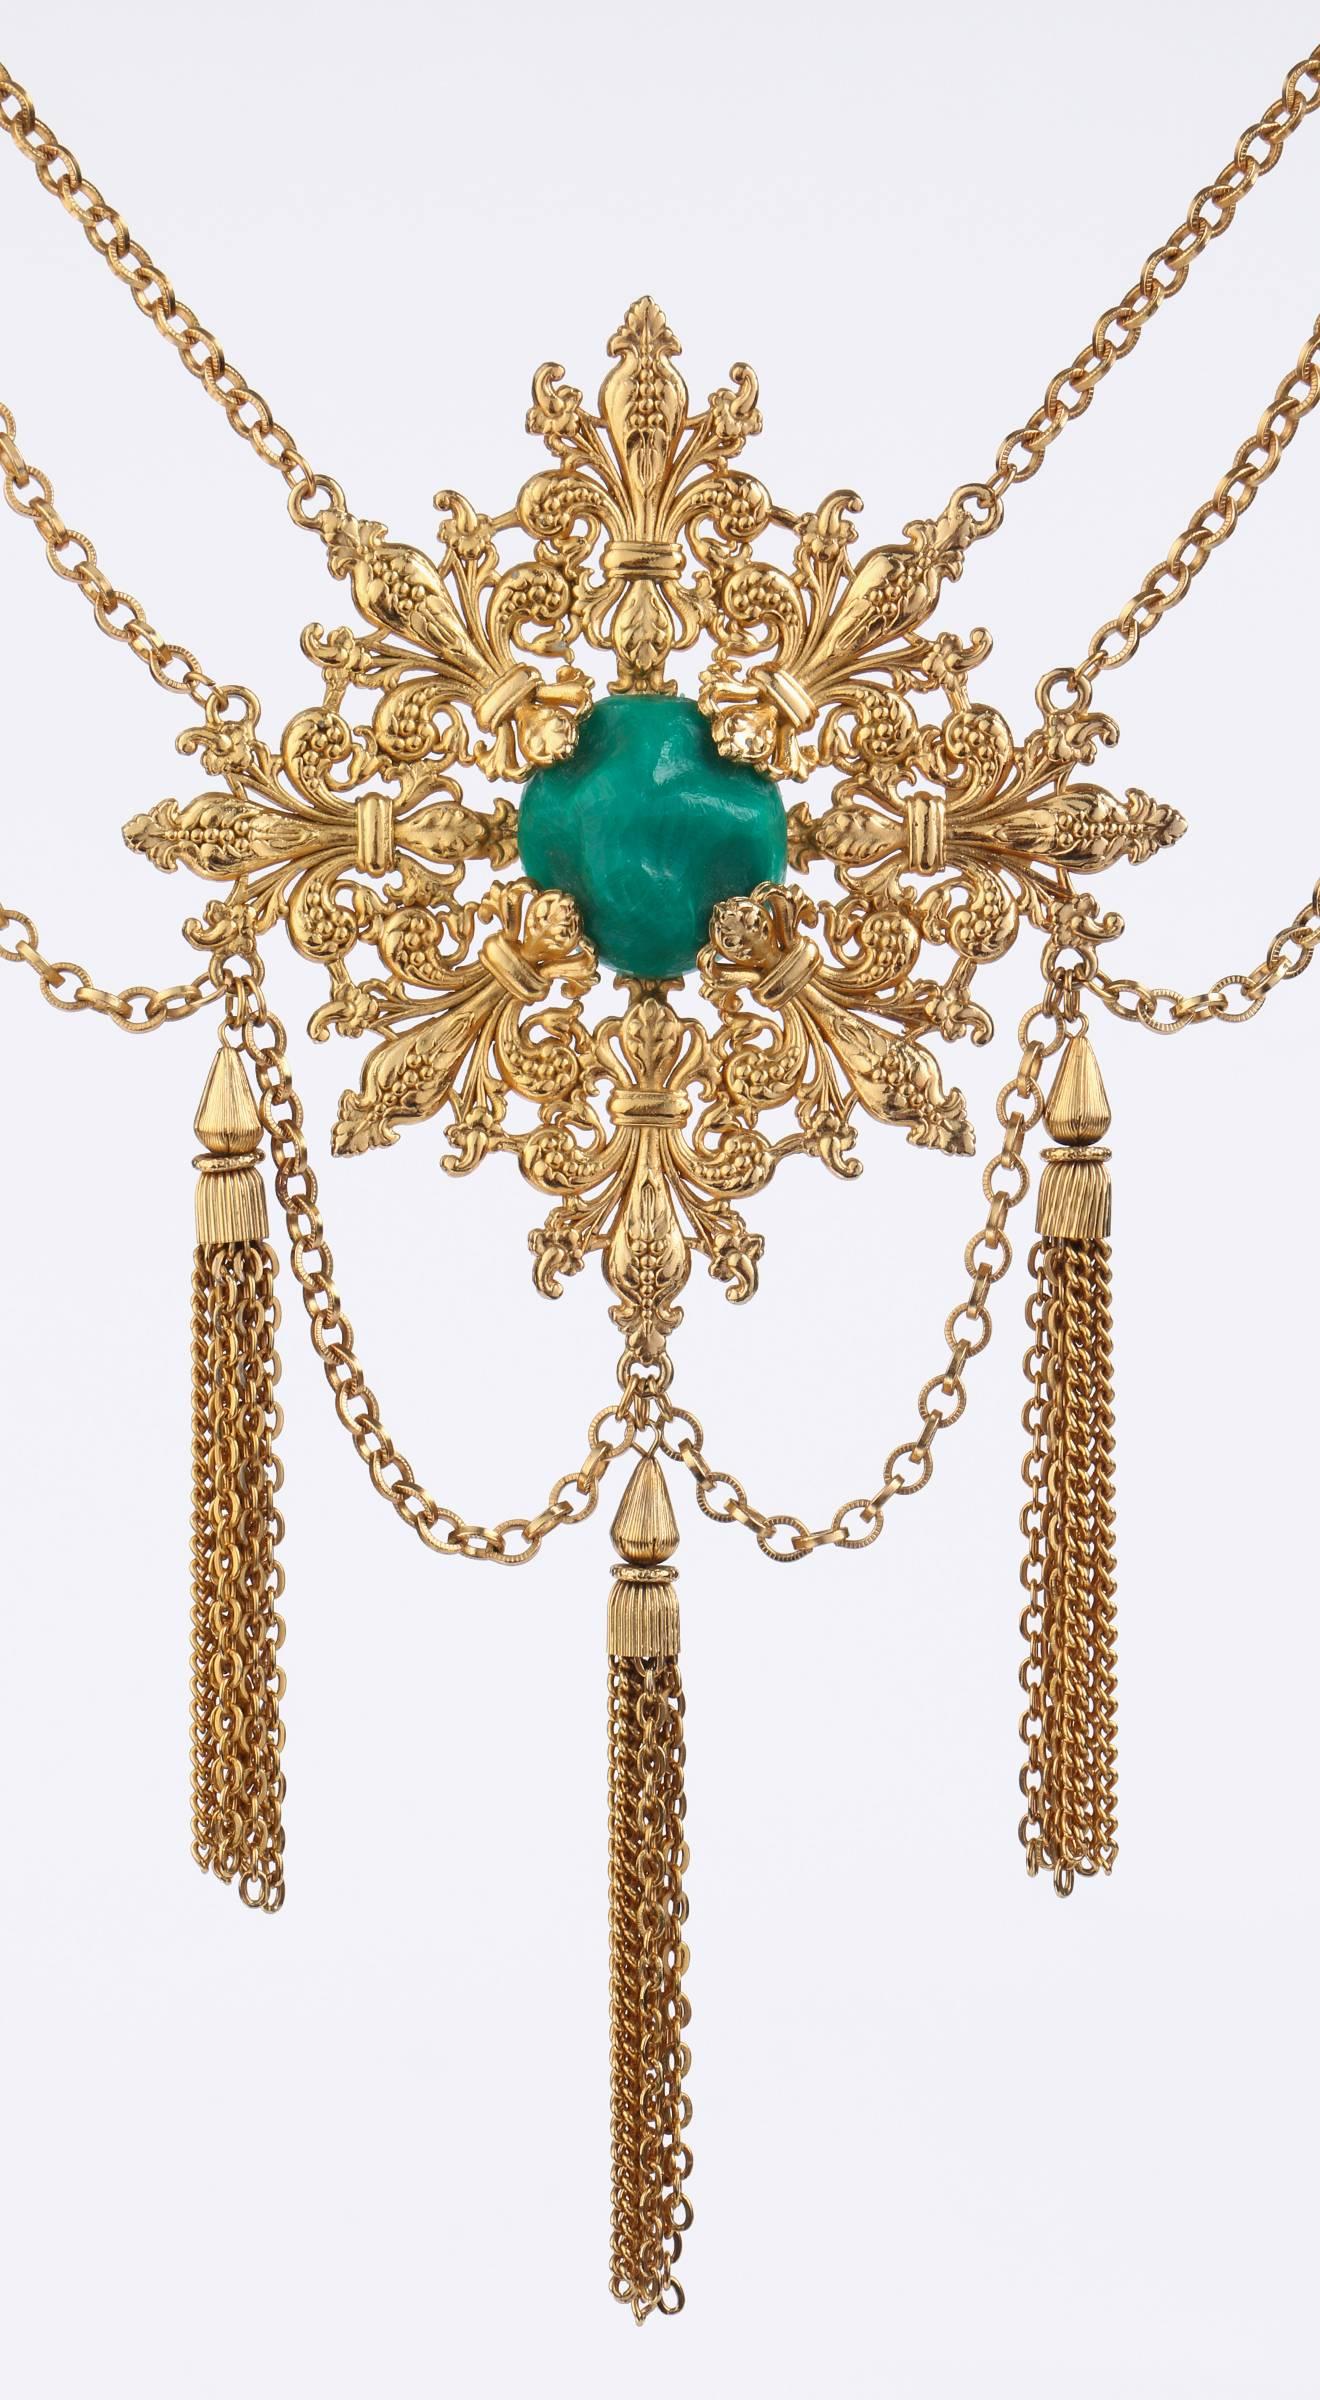 Vintage 1970s Napier gold tone sculptural Baroque revival Fleur de Lis pattern medallion with large center emerald colored faux-stone.  Medallion measures 4.5